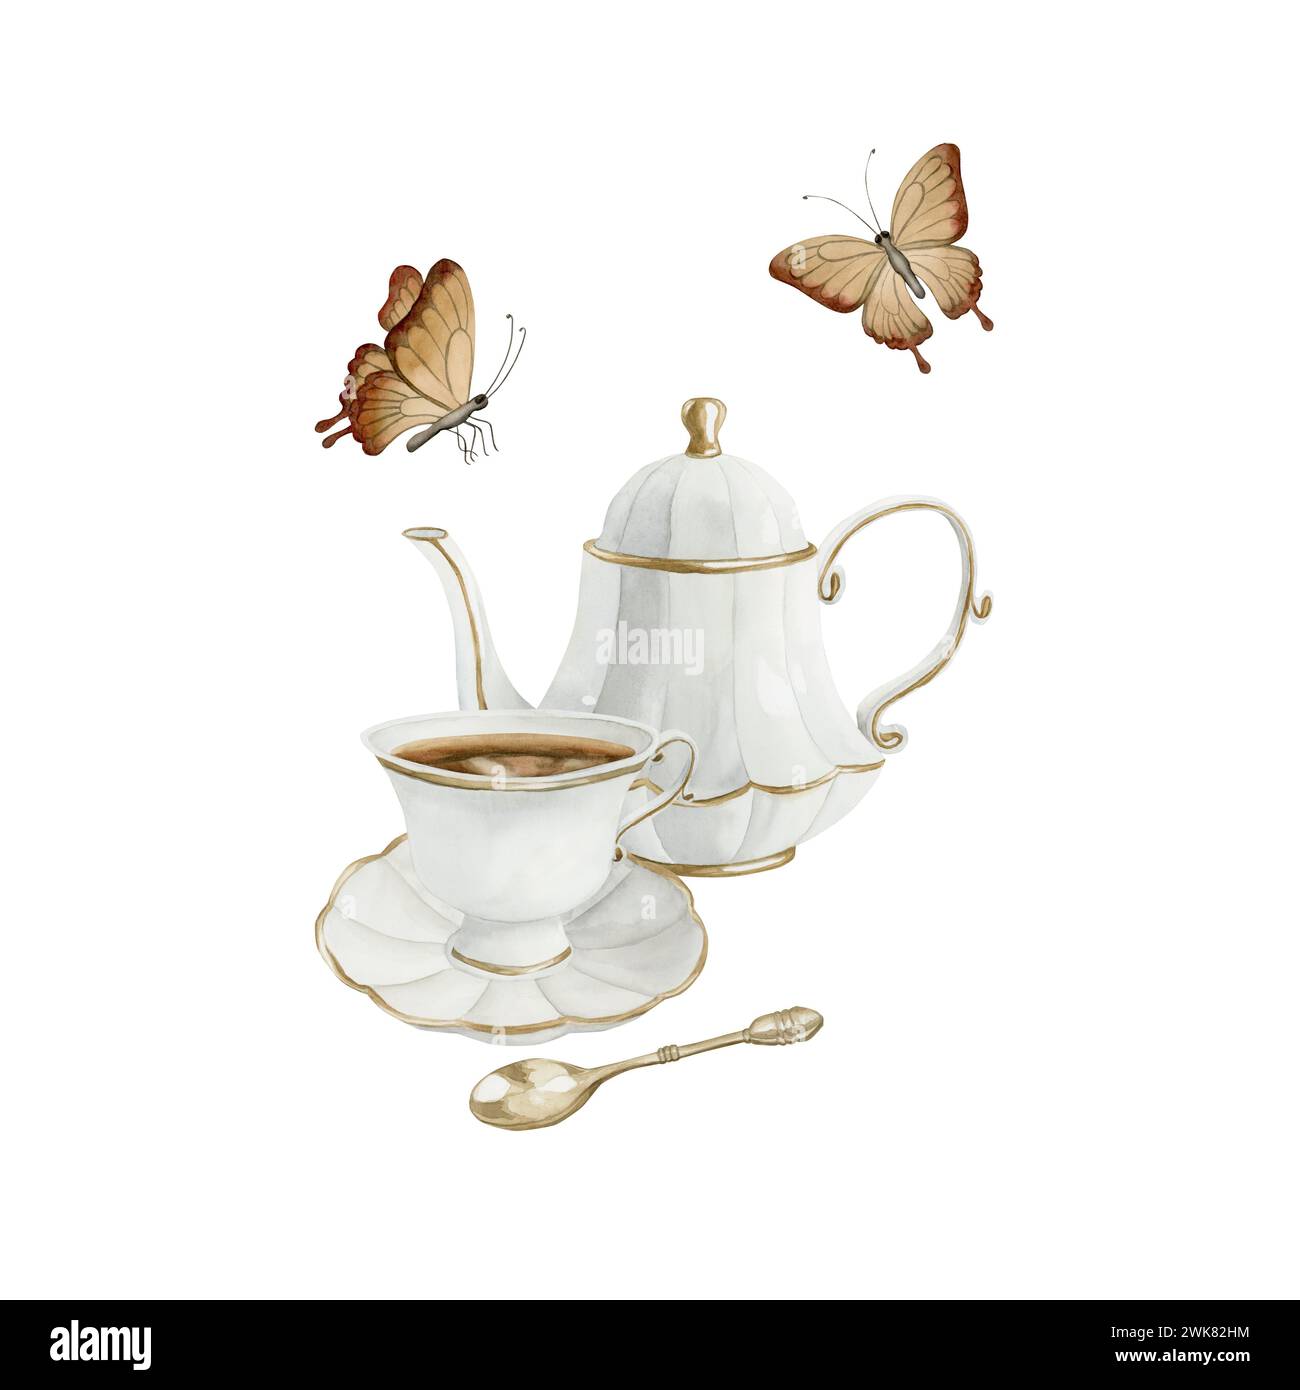 Composizione di teiera in porcellana bianca, tazza da tè e piattino con bordo dorato, cucchiaio da tè in metallo dorato e farfalle. Stile vittoriano. Illustrazione acquerello Foto Stock